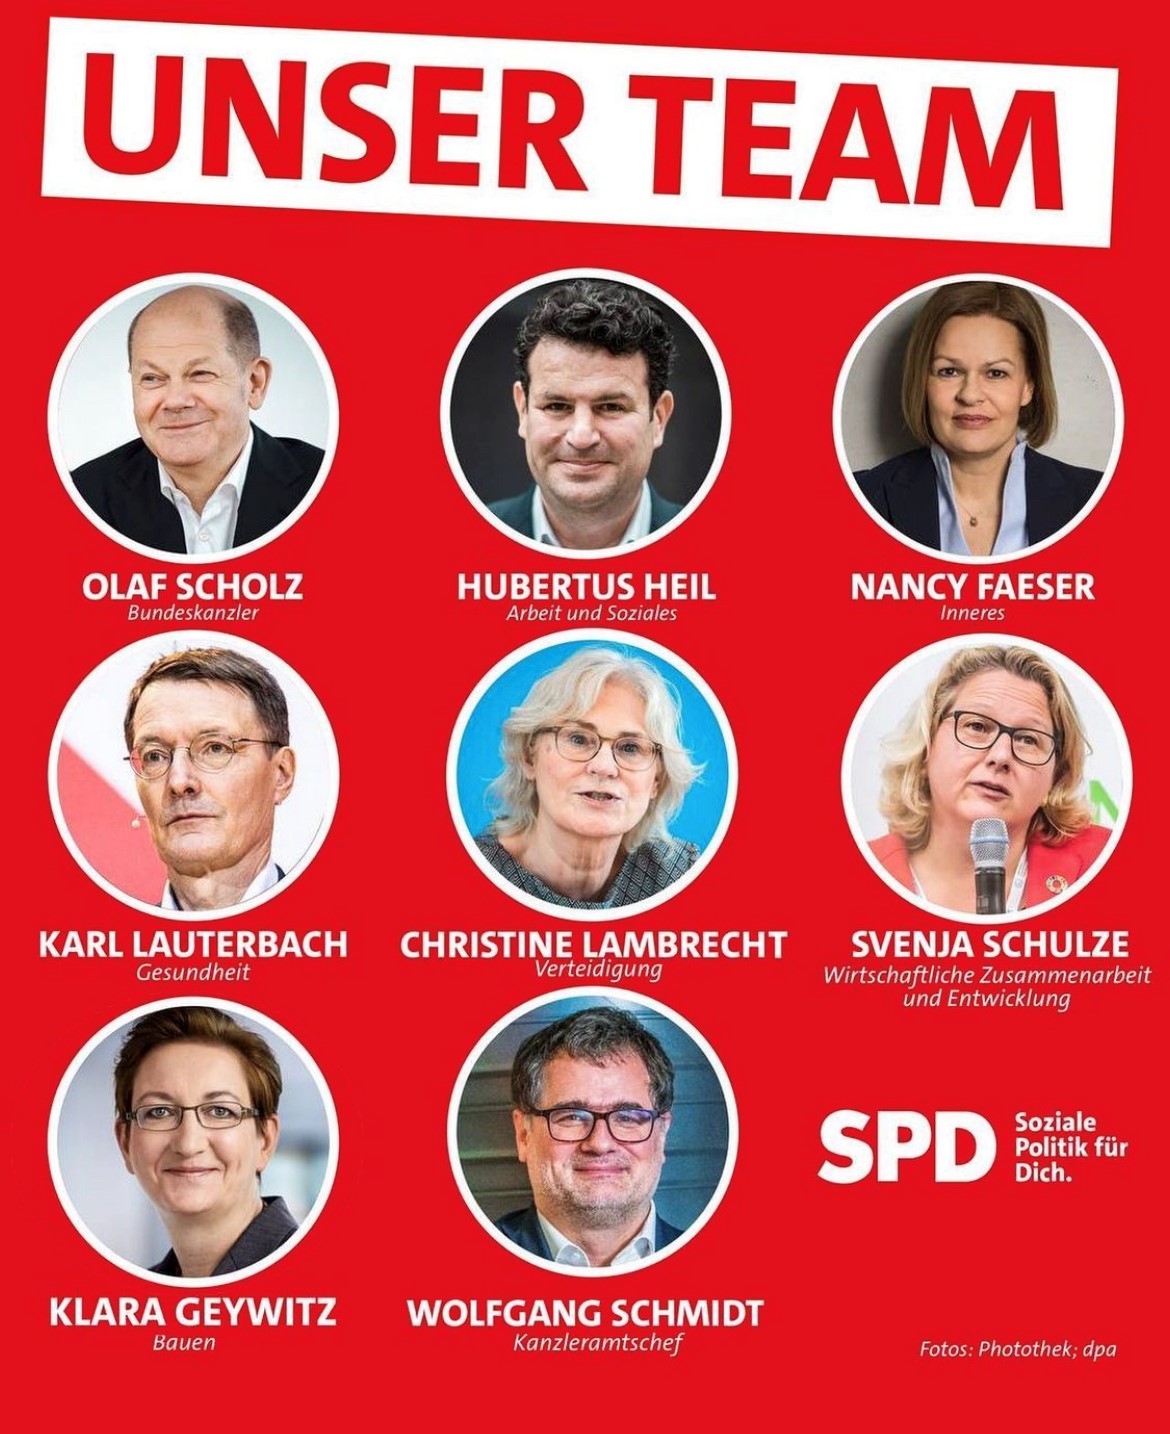 SPD Minister